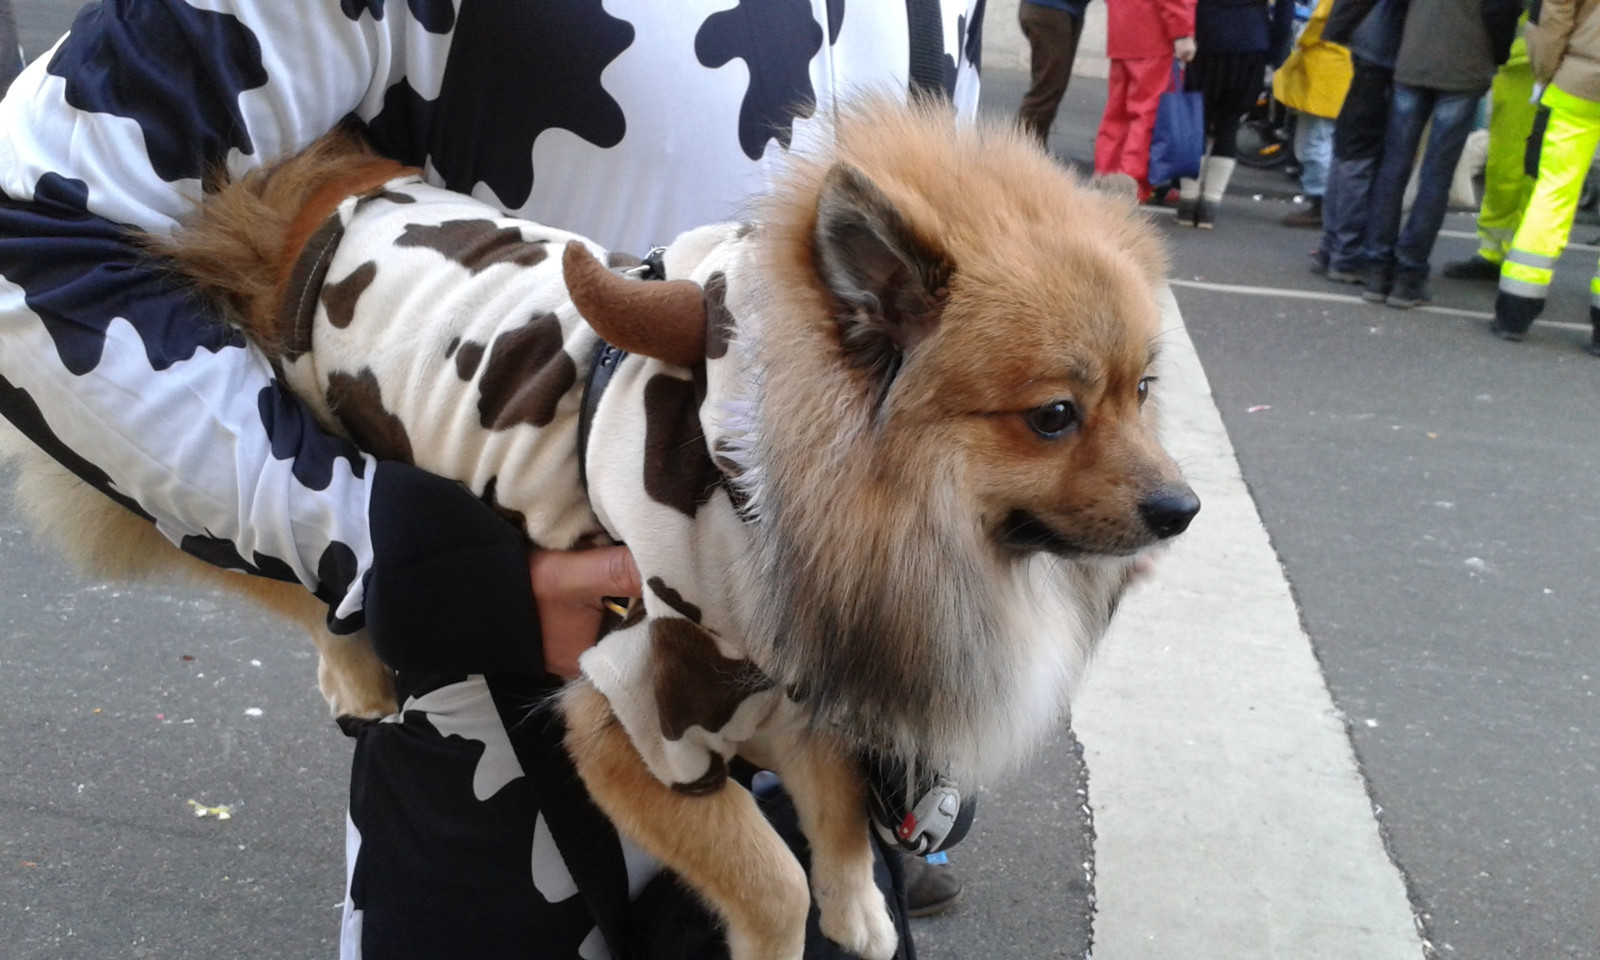 Für Hunde sind Karnevalsumzüge meist mit Stress verbunden. Tierschützer sehen die Kostümierung der Vierbeiner kritisch.